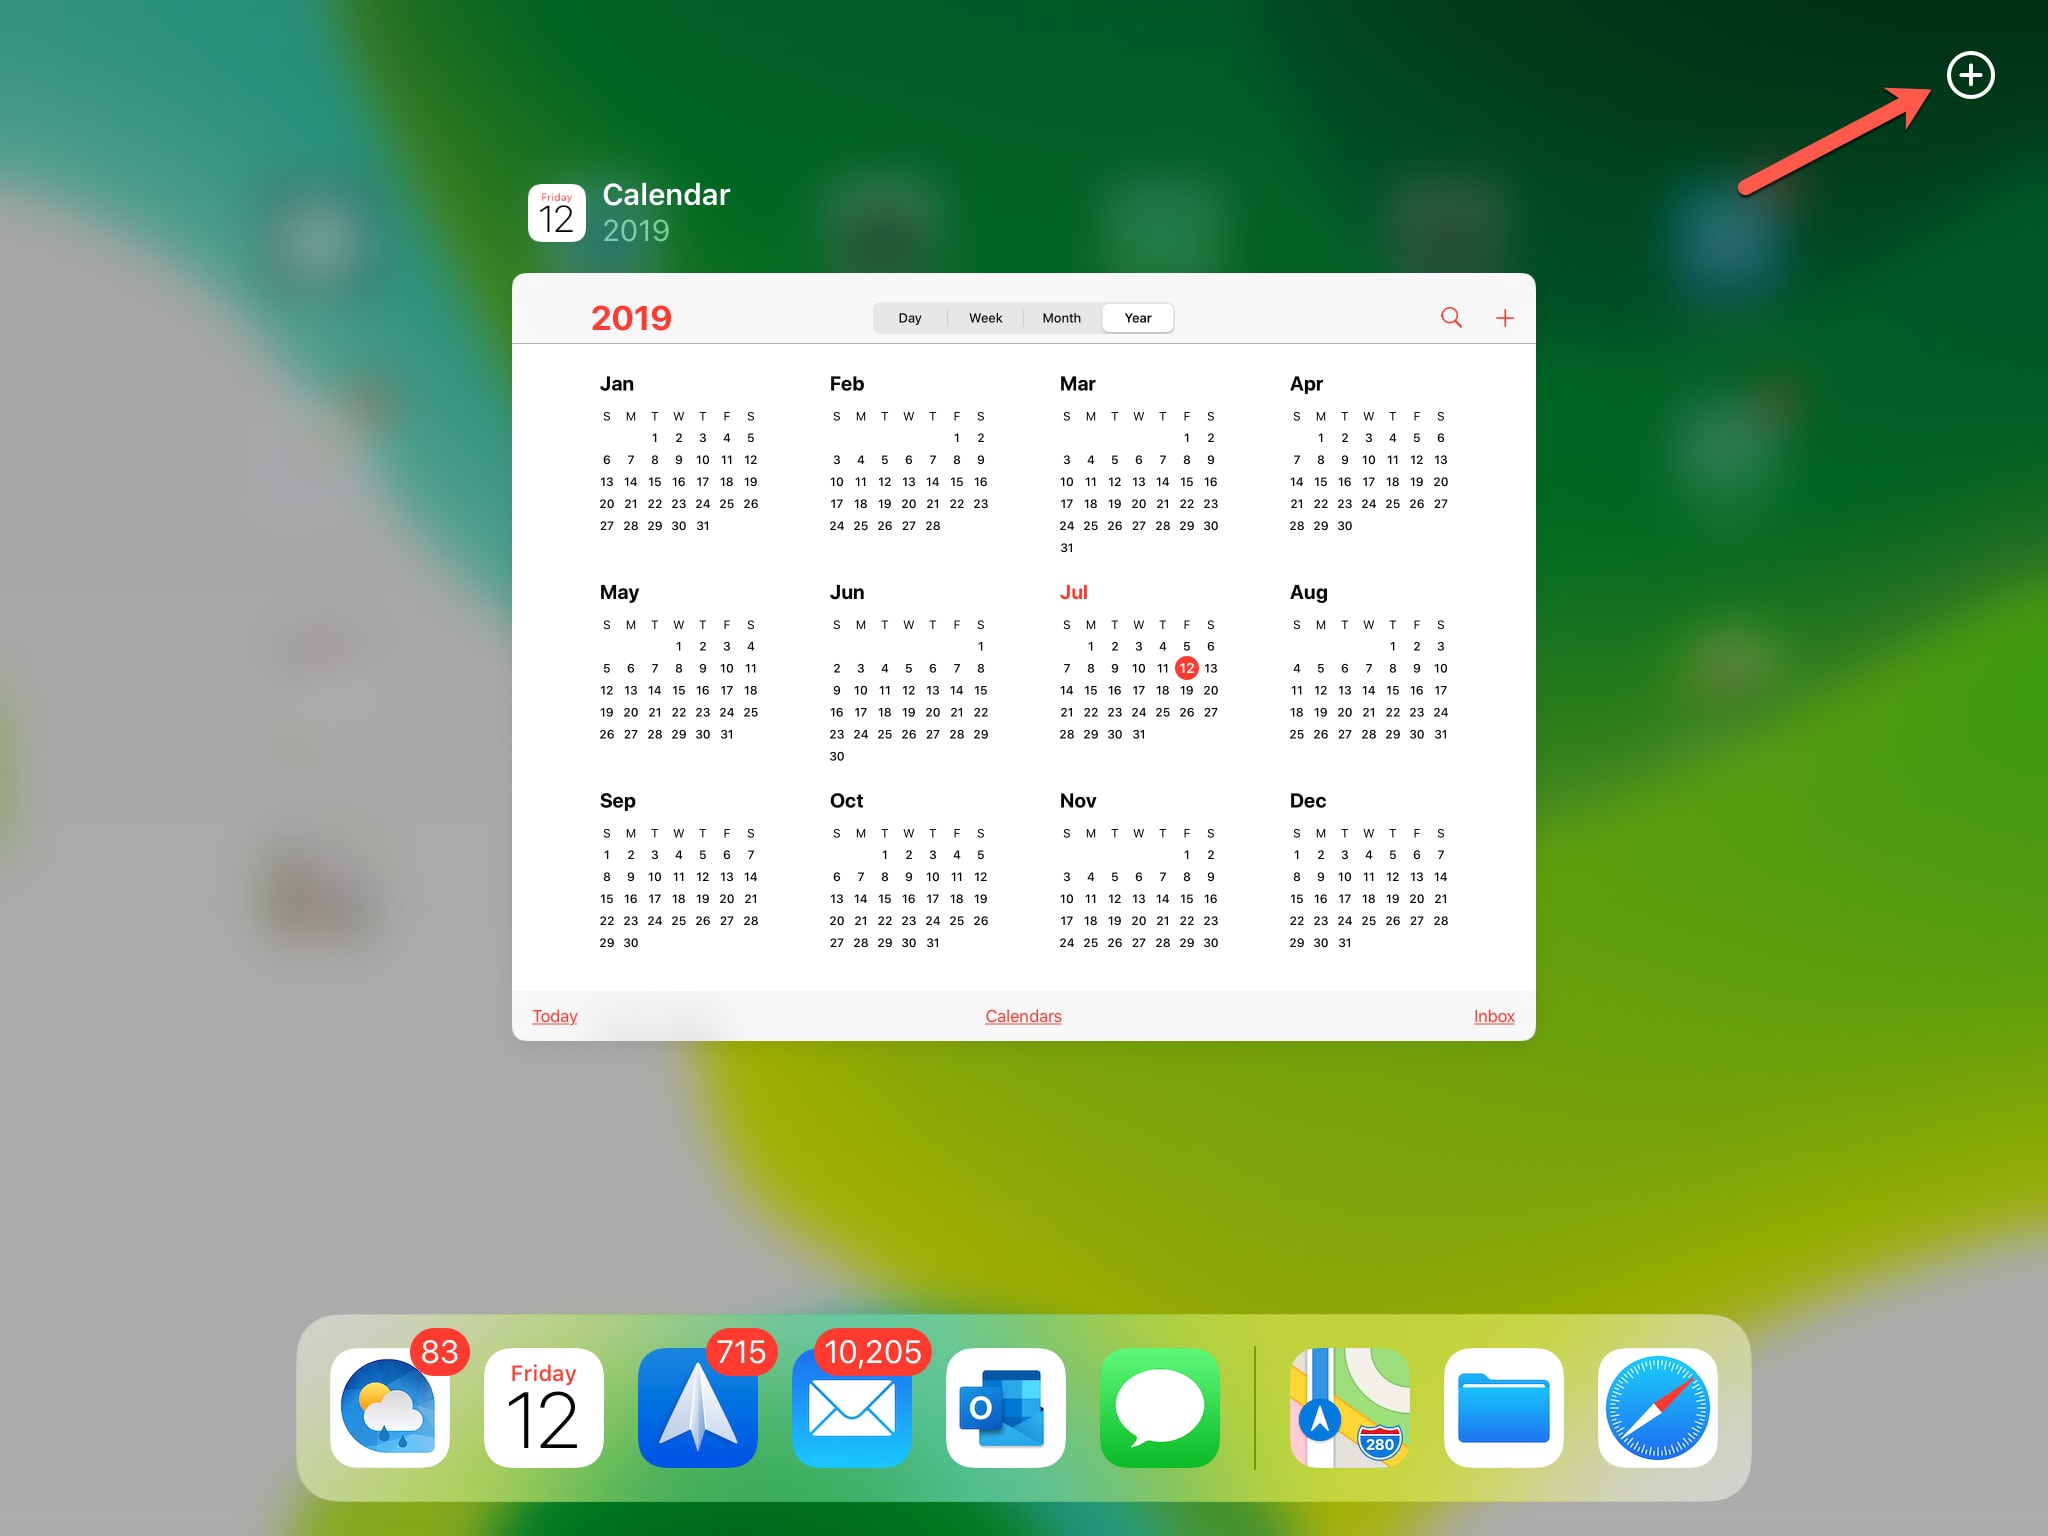 Visualización del calendario al iPad